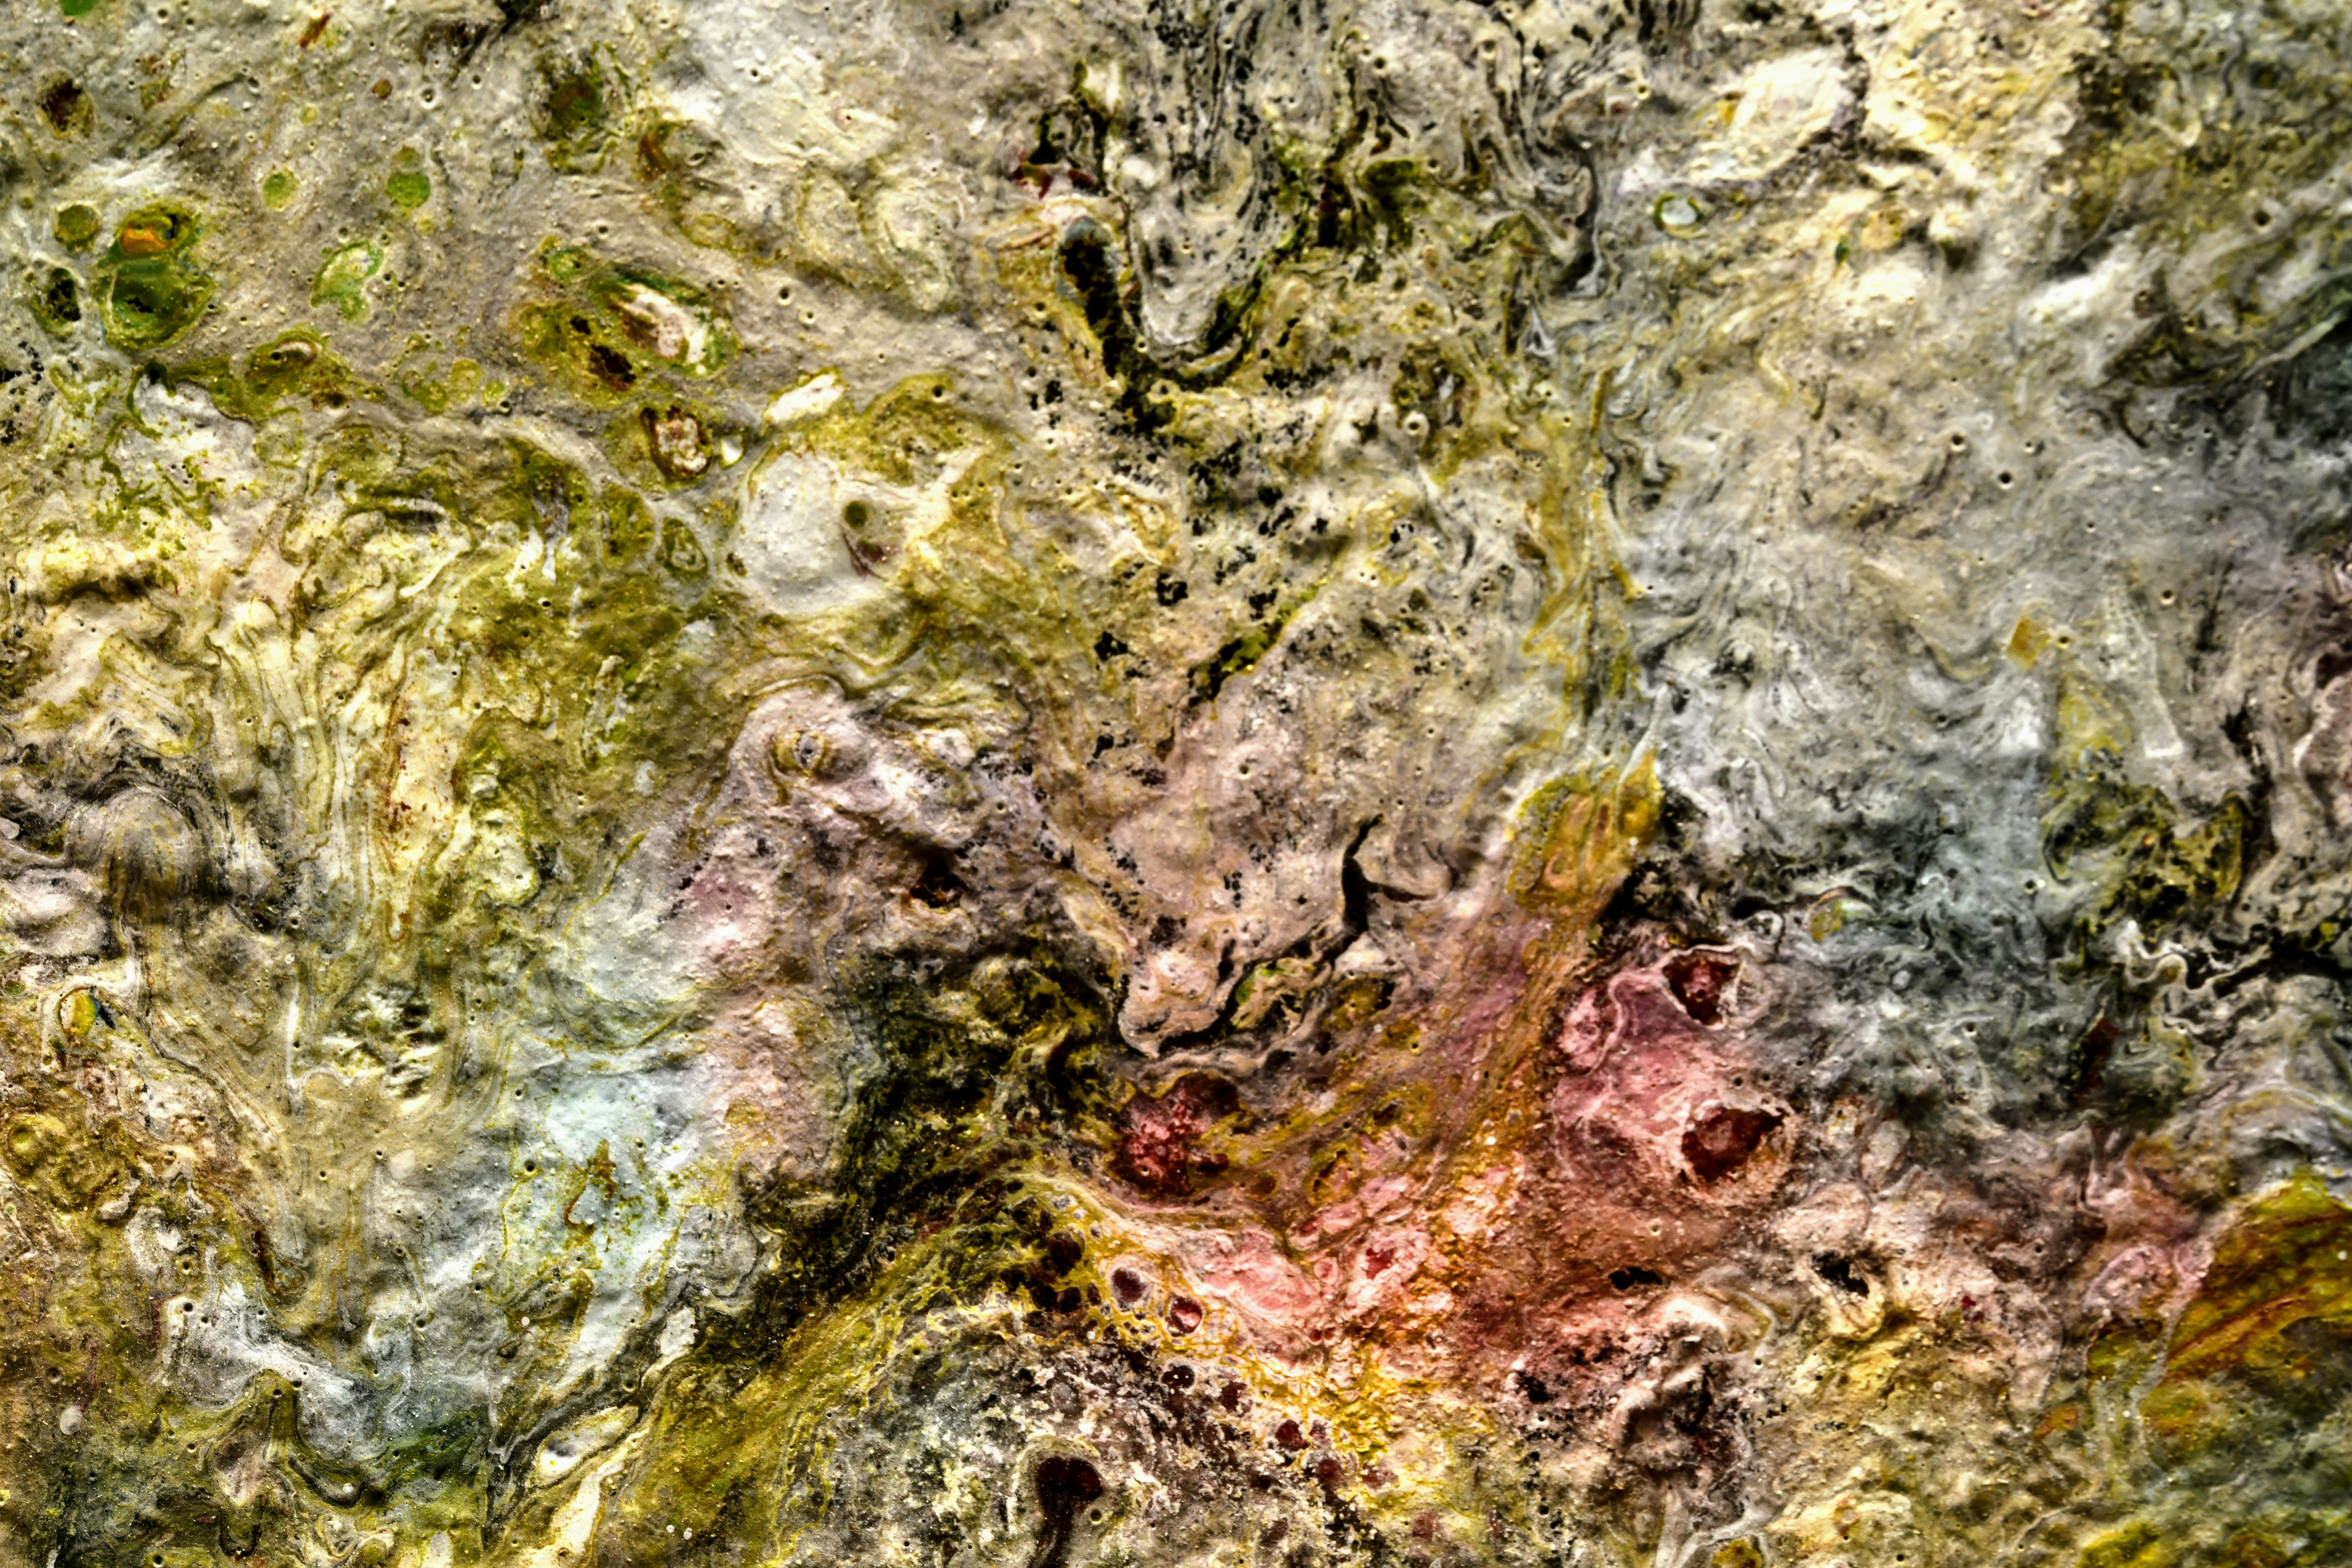 a close-up of a rock